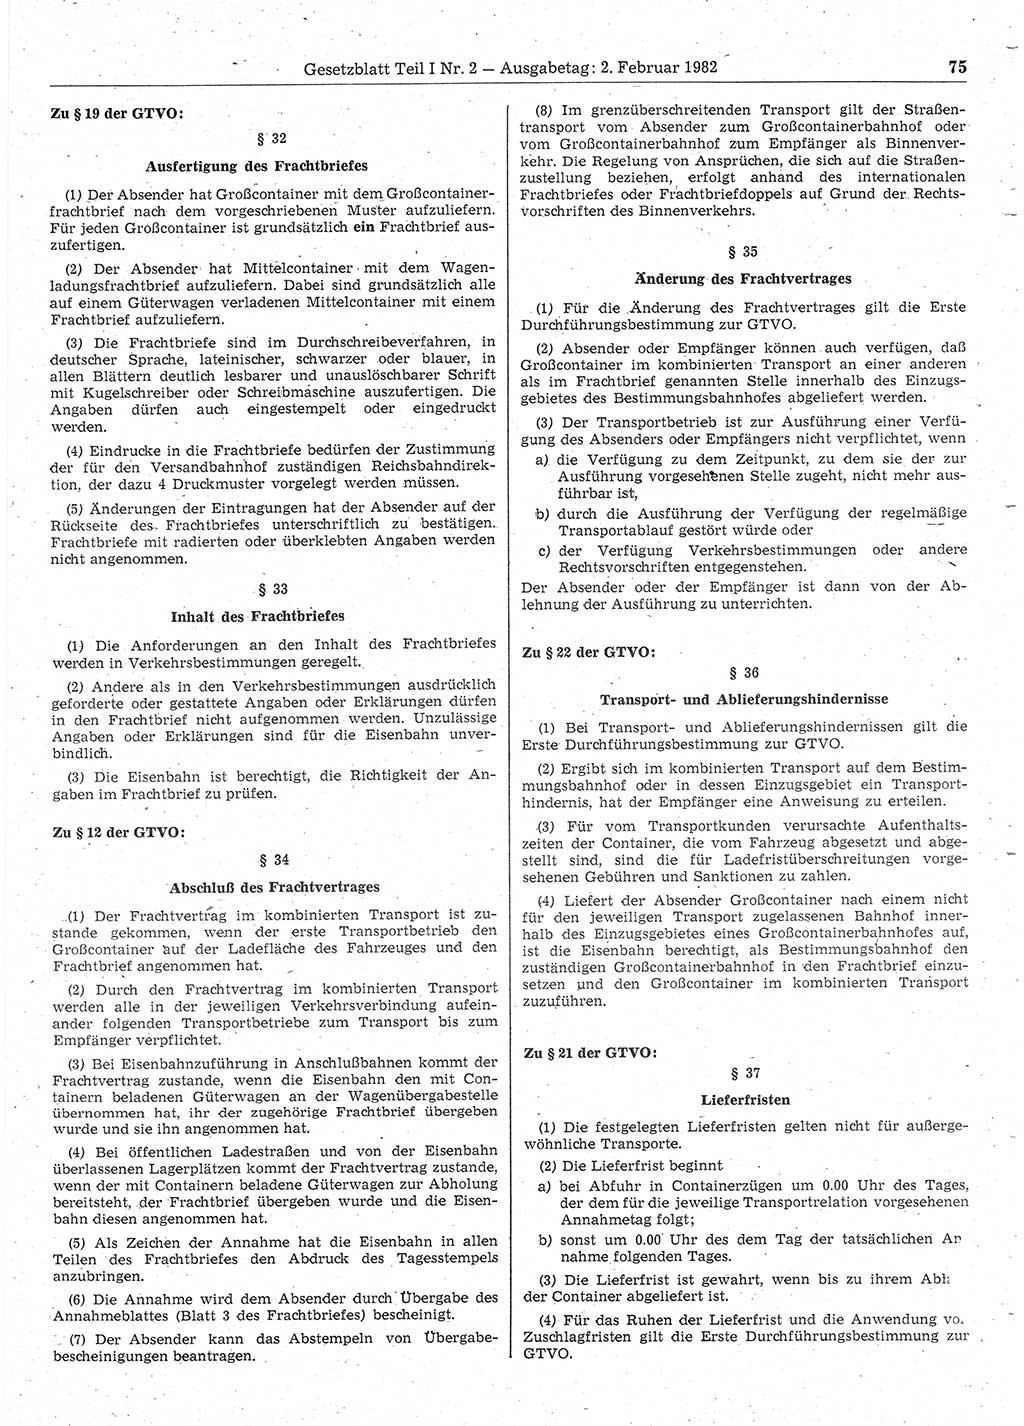 Gesetzblatt (GBl.) der Deutschen Demokratischen Republik (DDR) Teil Ⅰ 1982, Seite 75 (GBl. DDR Ⅰ 1982, S. 75)